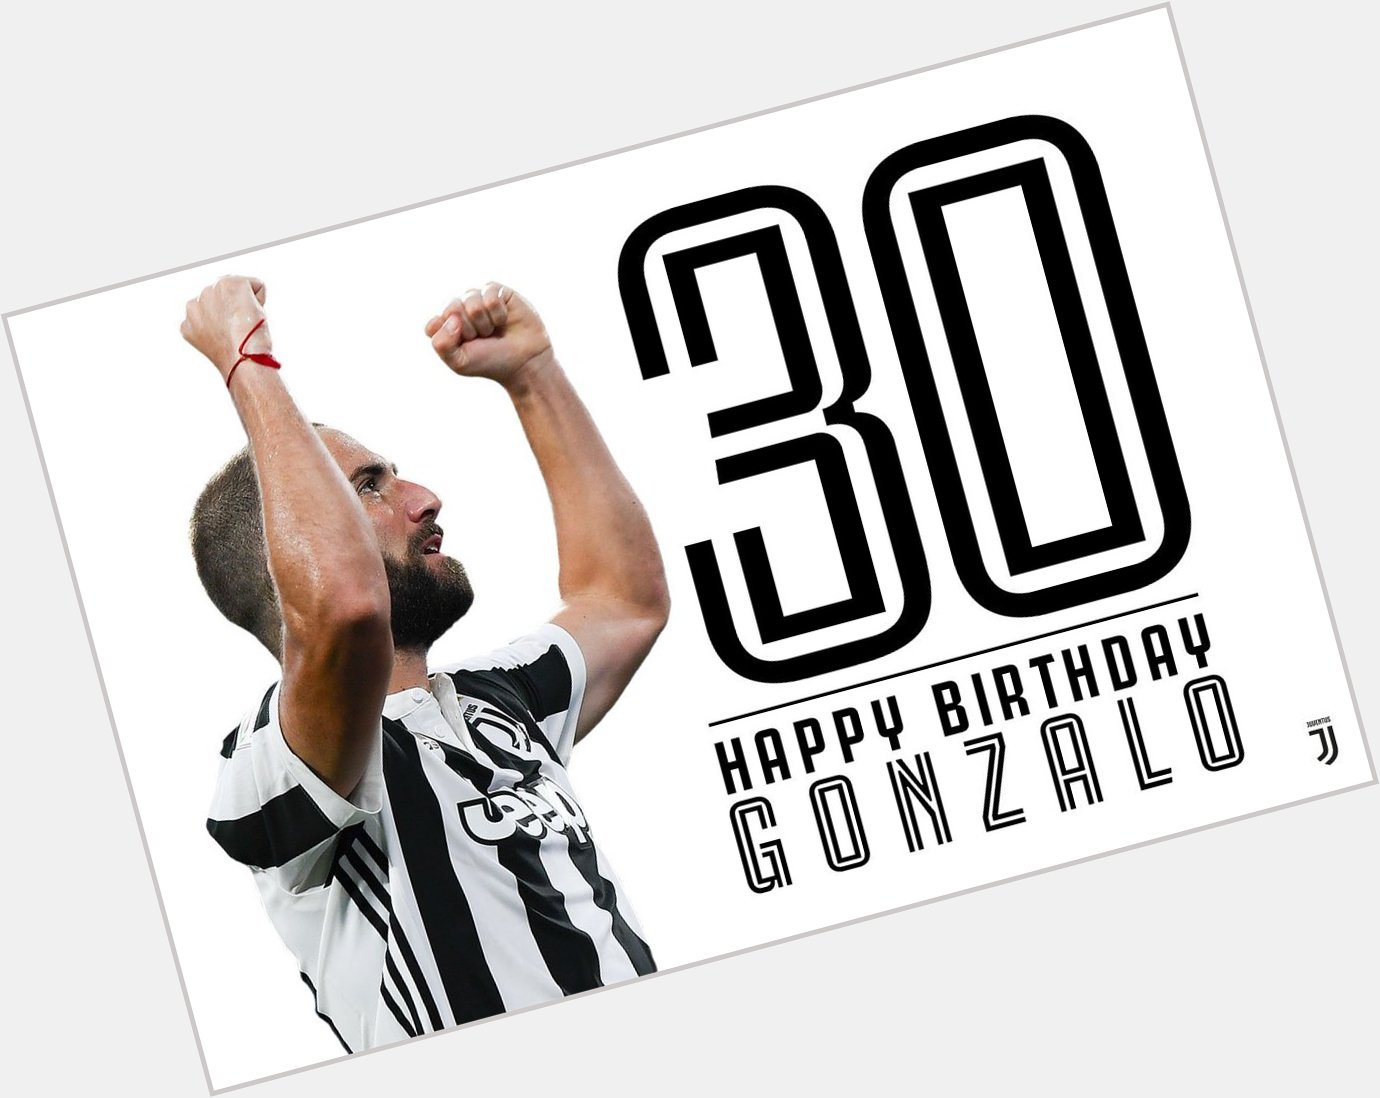 Event:Happy Birthday, Gonzalo!  